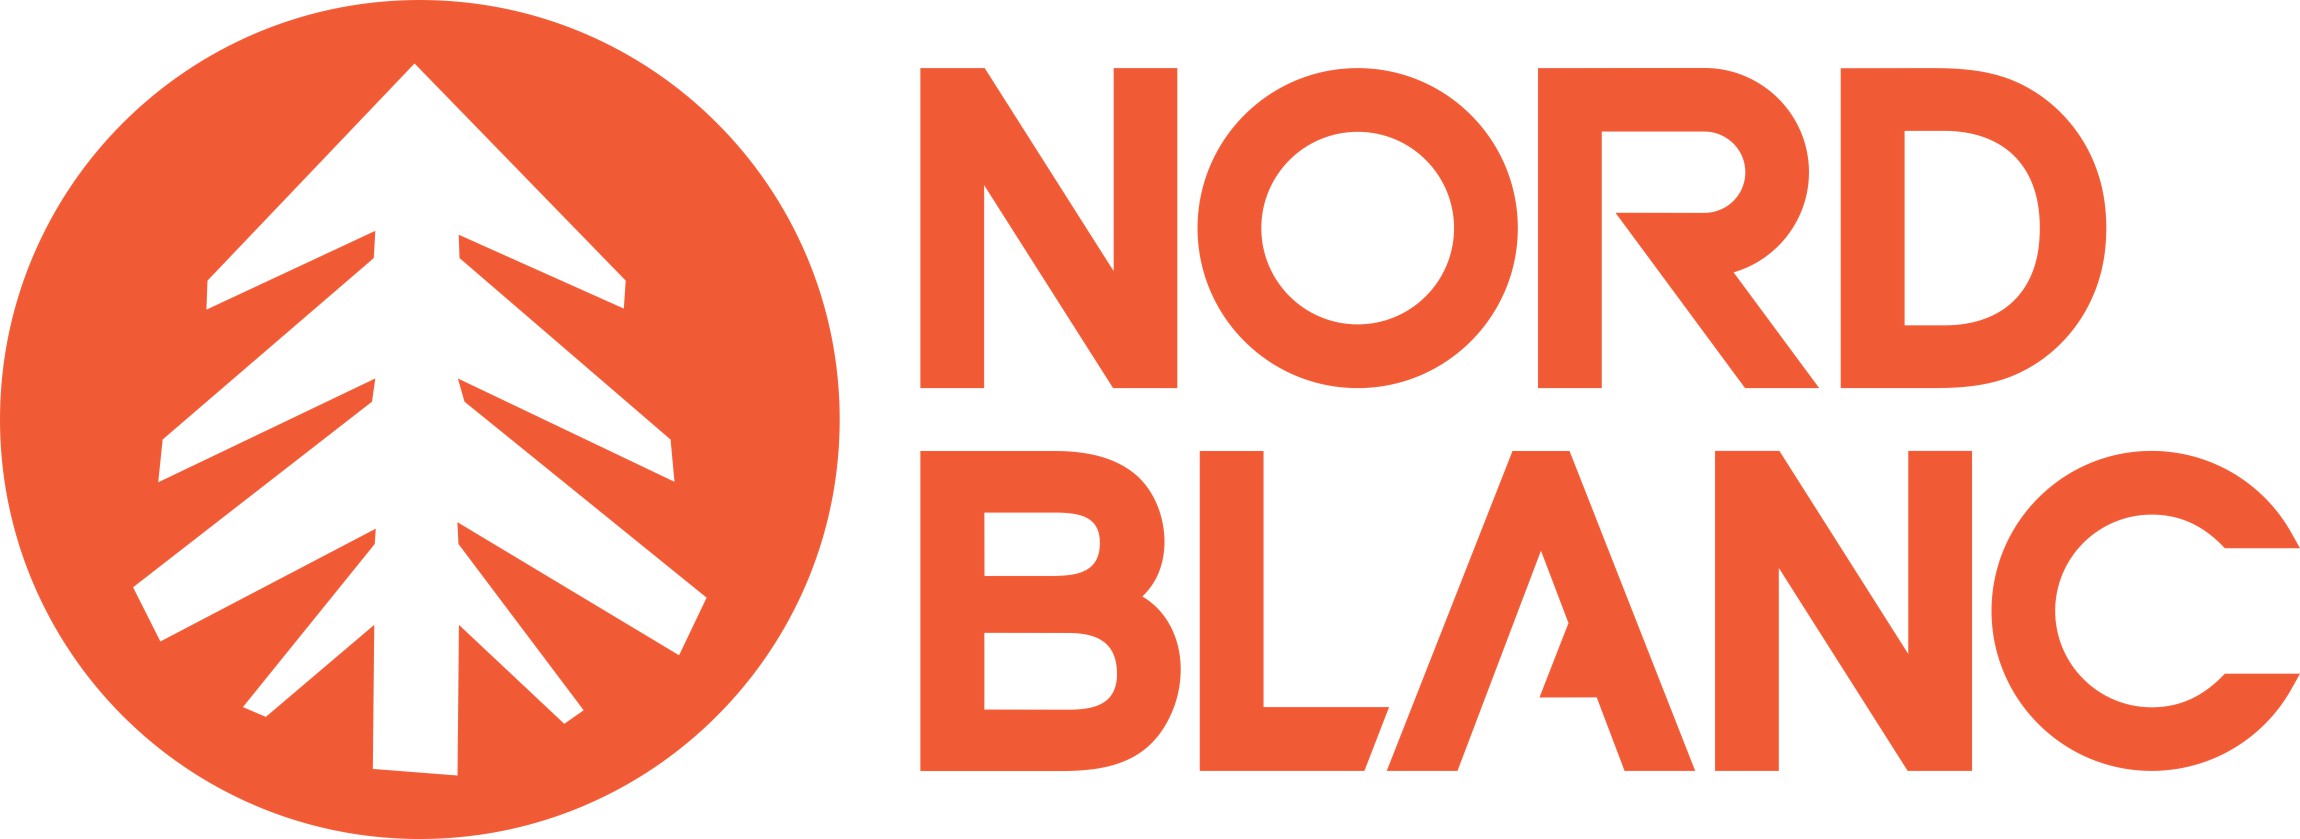 nordblanc-logo